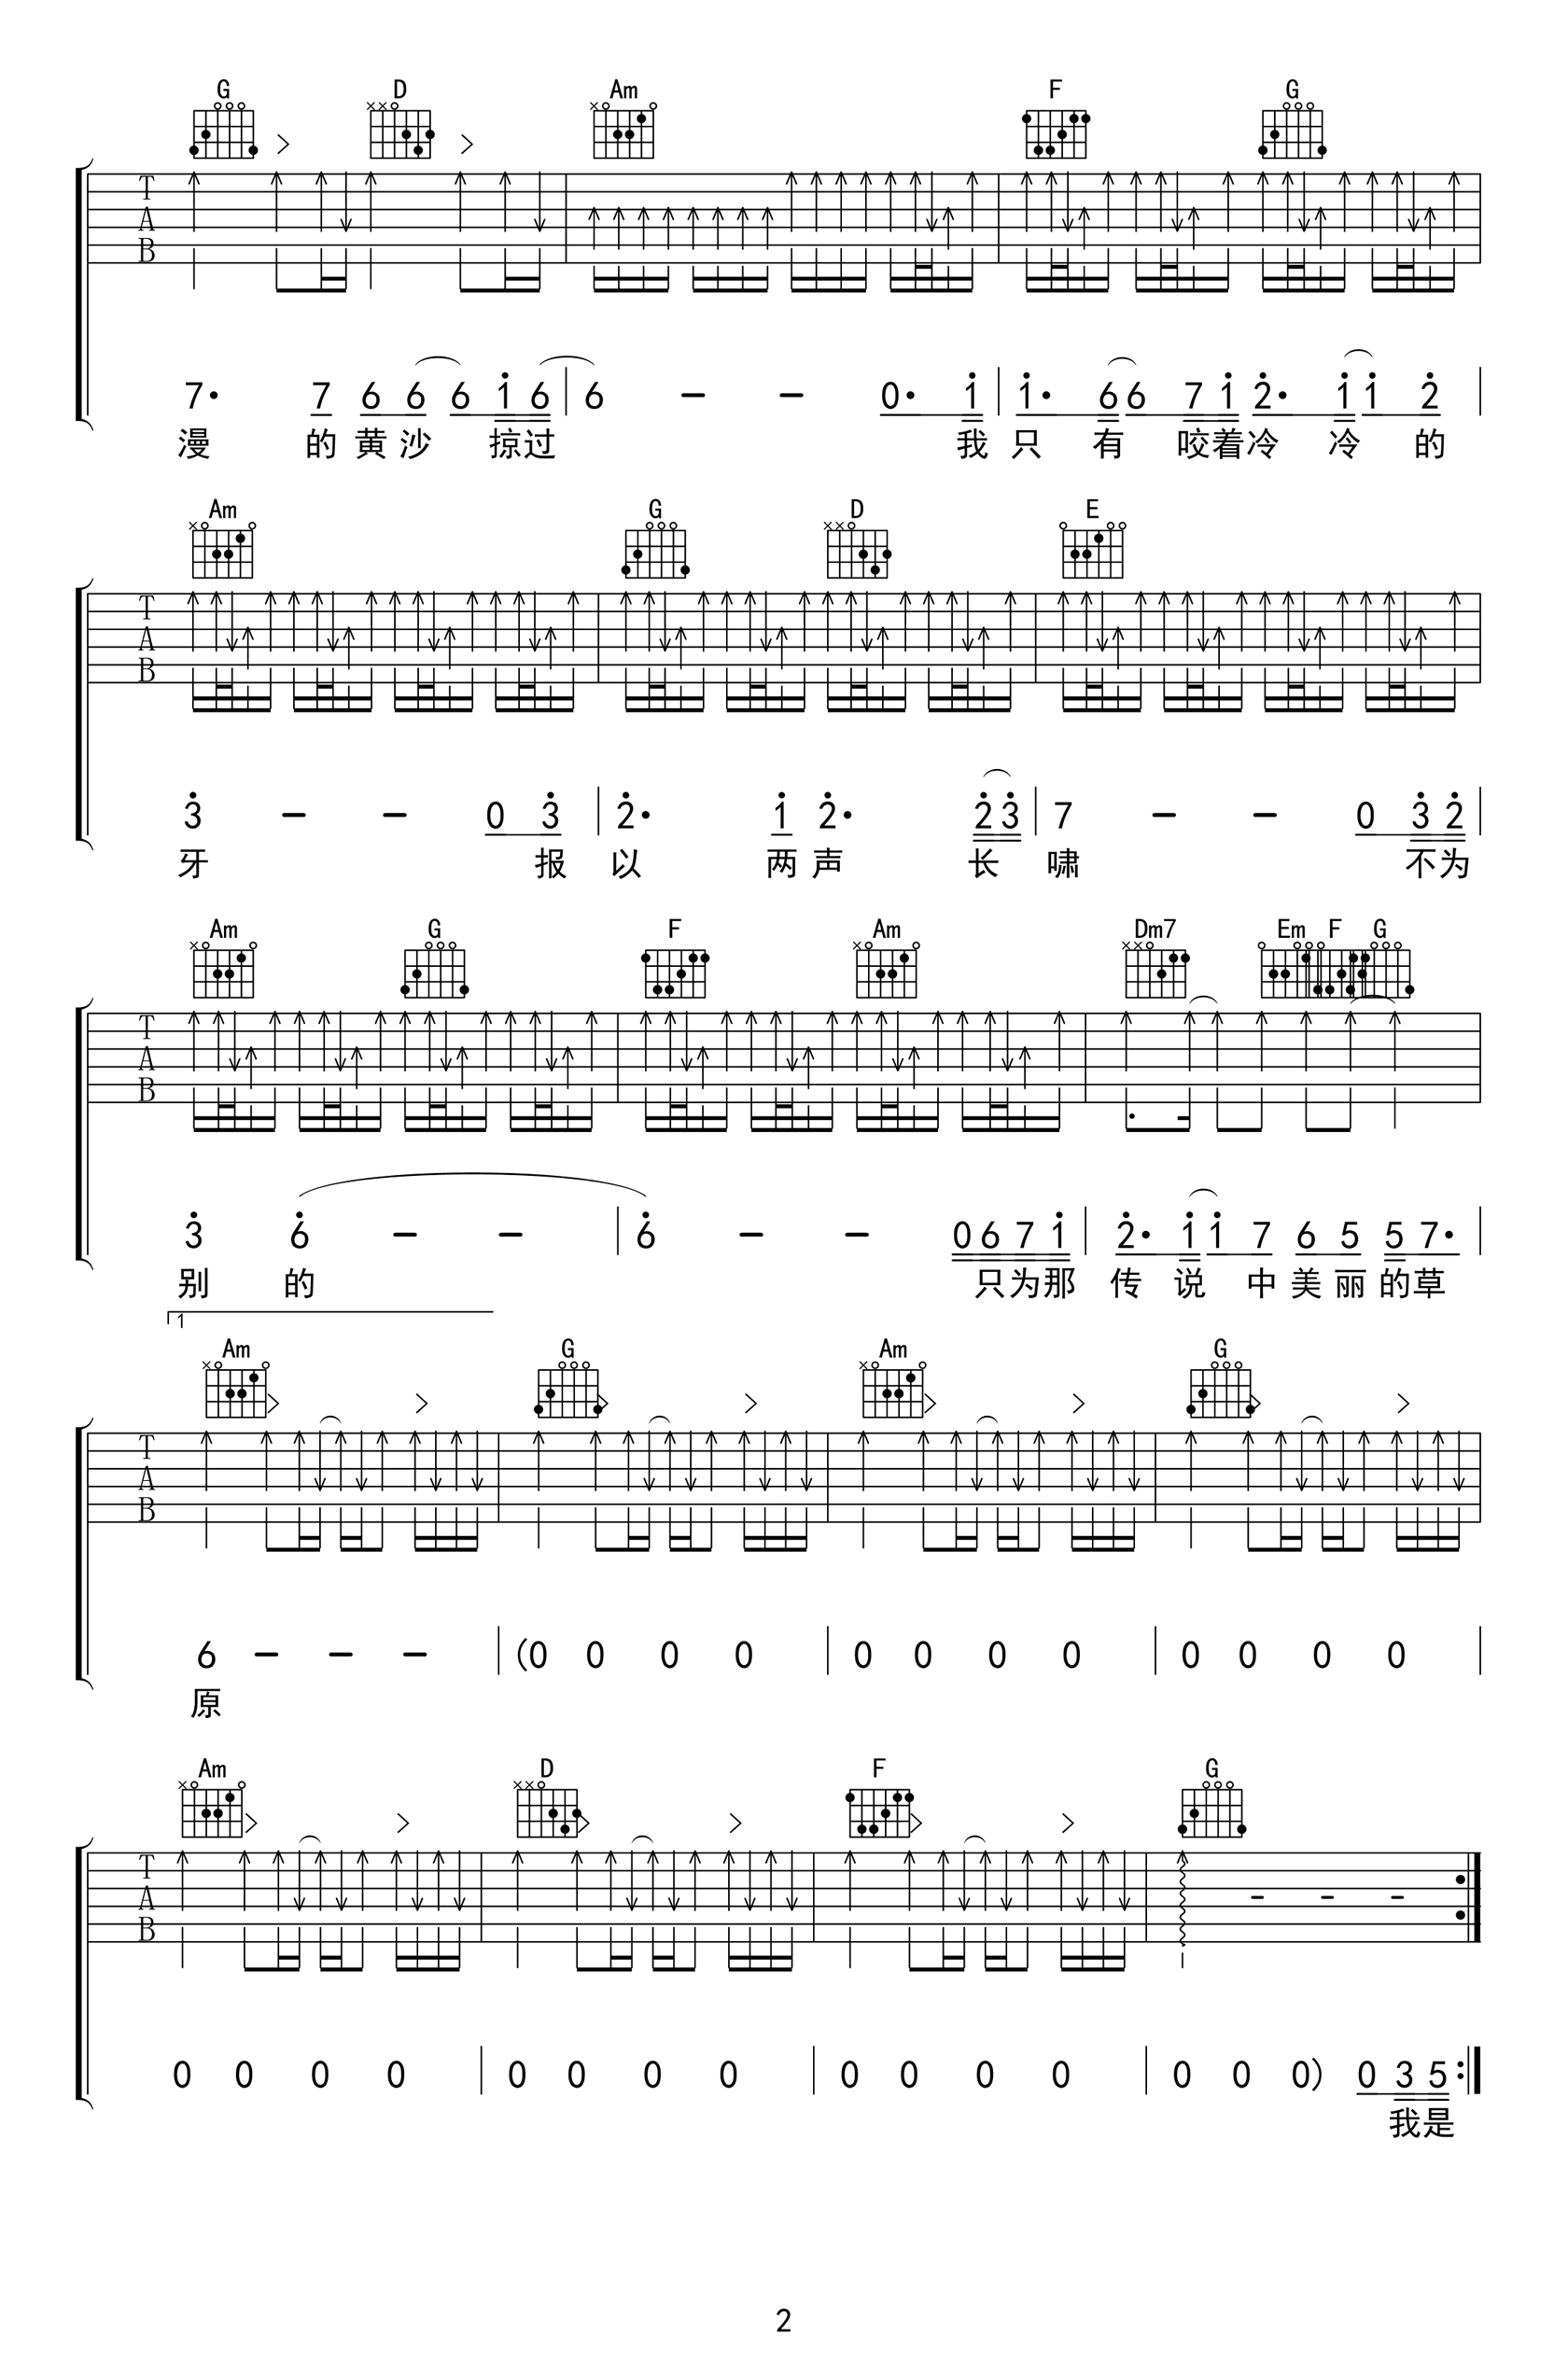 狼(97新版)吉他谱 齐秦-彼岸吉他 - 一站式吉他爱好者服务平台